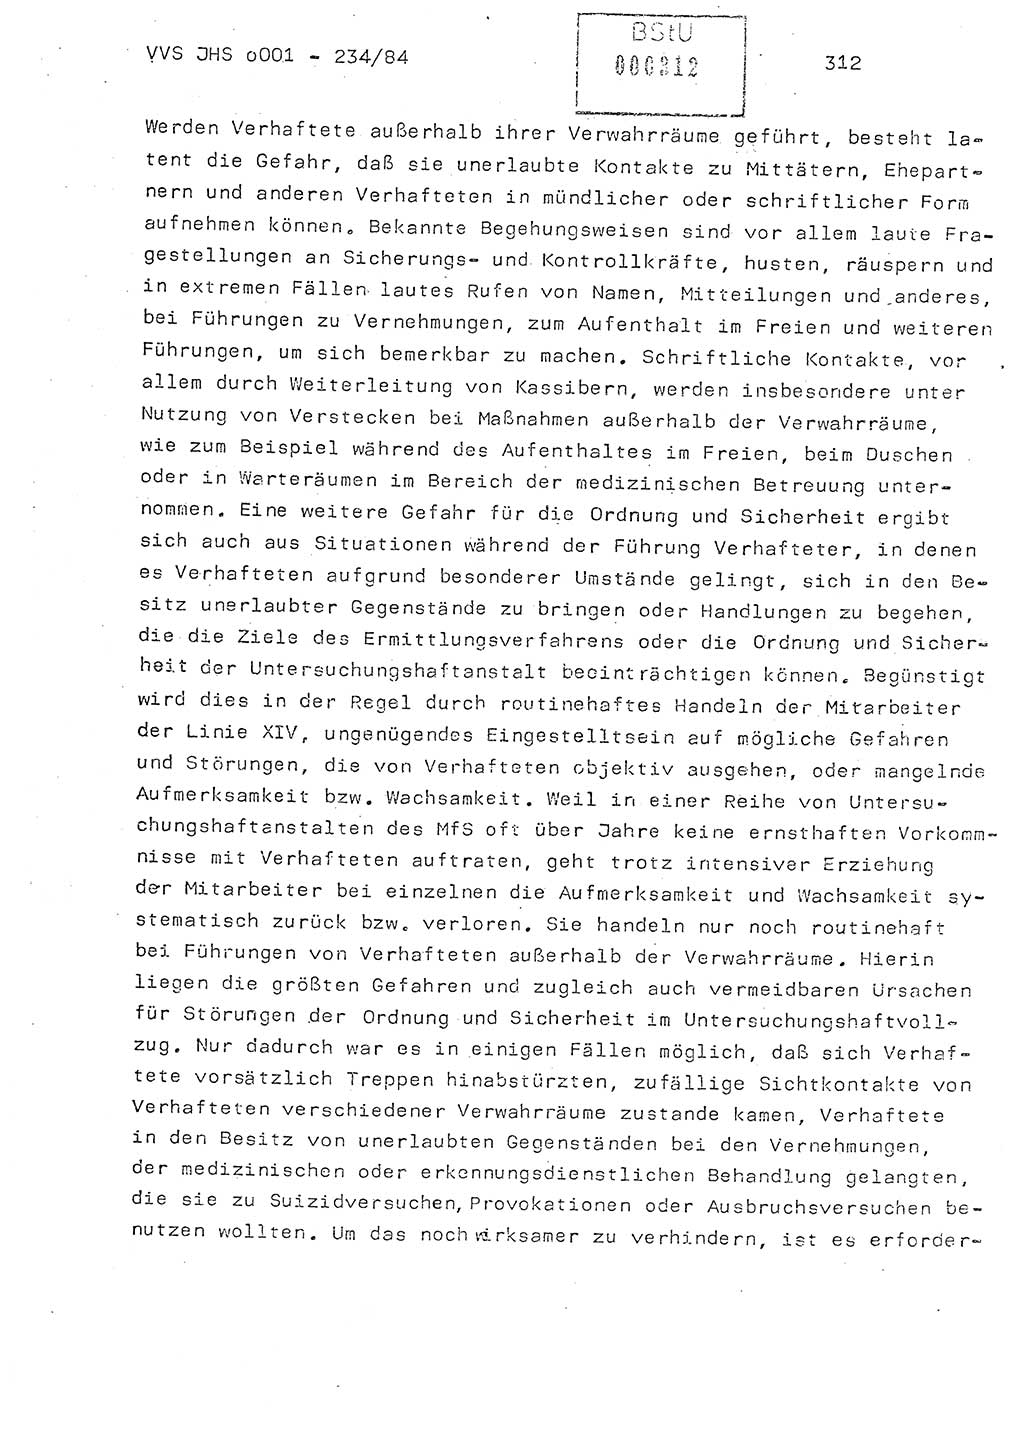 Dissertation Oberst Siegfried Rataizick (Abt. ⅩⅣ), Oberstleutnant Volkmar Heinz (Abt. ⅩⅣ), Oberstleutnant Werner Stein (HA Ⅸ), Hauptmann Heinz Conrad (JHS), Ministerium für Staatssicherheit (MfS) [Deutsche Demokratische Republik (DDR)], Juristische Hochschule (JHS), Vertrauliche Verschlußsache (VVS) o001-234/84, Potsdam 1984, Seite 312 (Diss. MfS DDR JHS VVS o001-234/84 1984, S. 312)